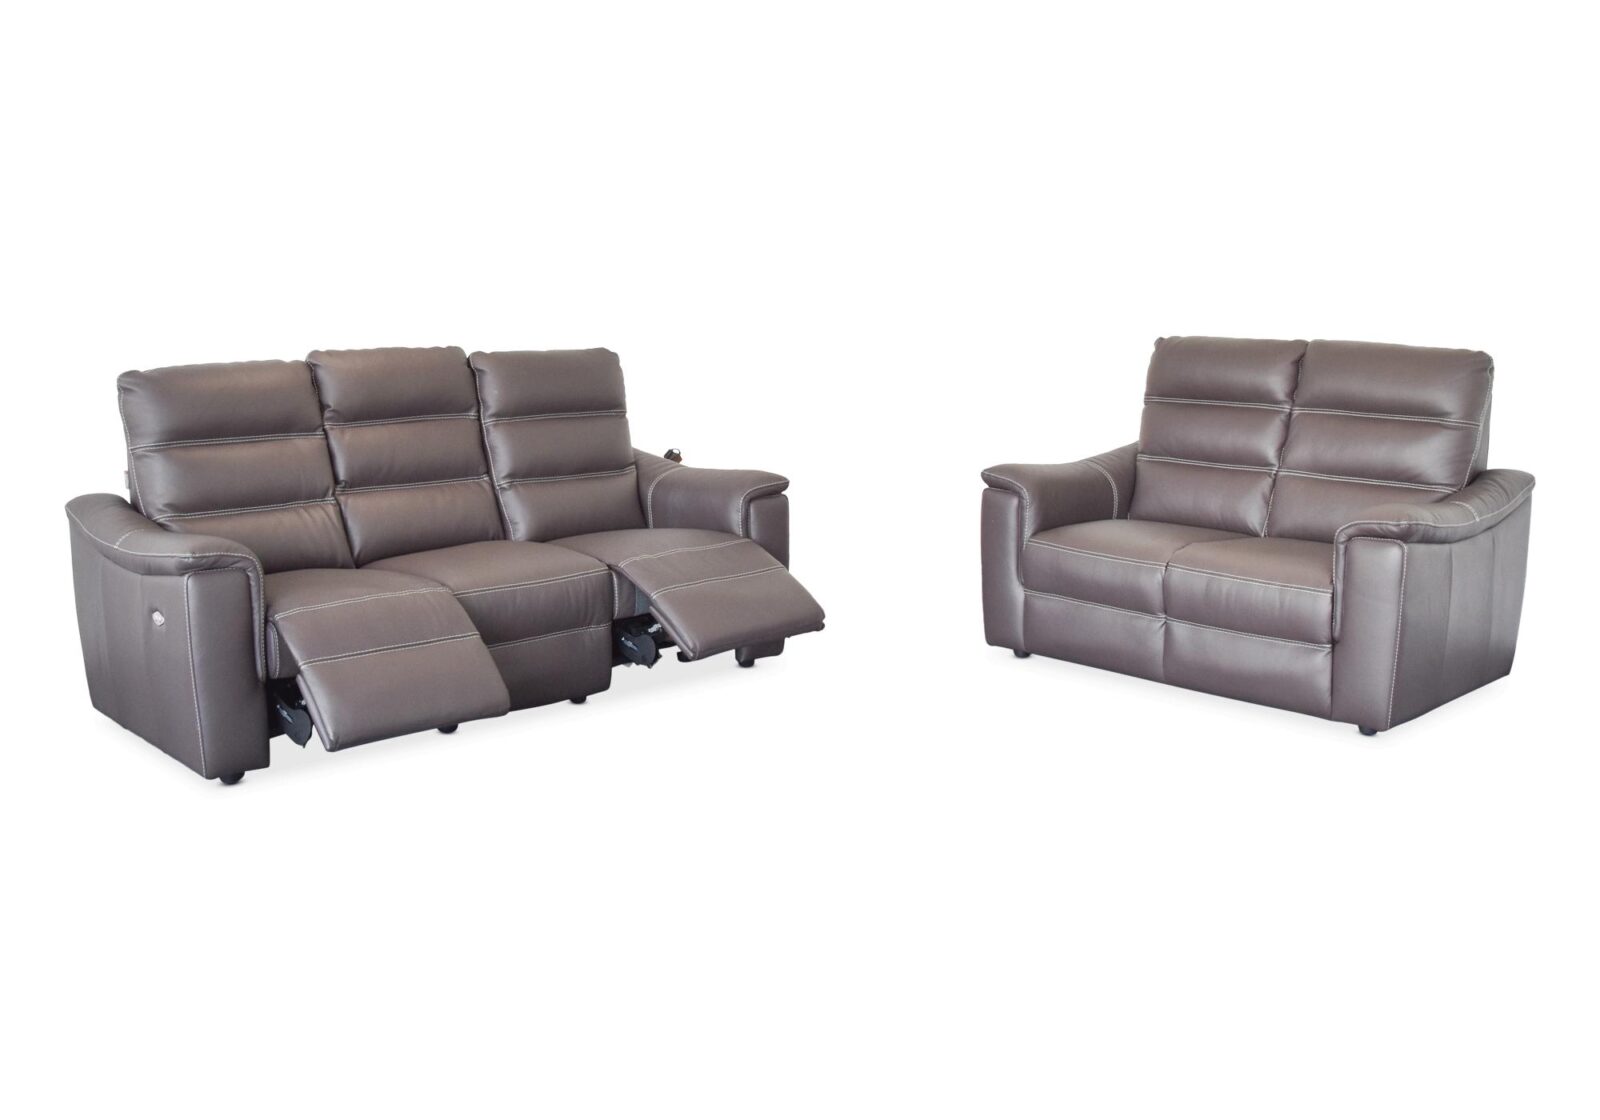 Polstergruppe Muralto mit 2er und 3er Sofa. Bezug: Leder. Farbe: Braun. Erhältlich bei Möbel Gallati.